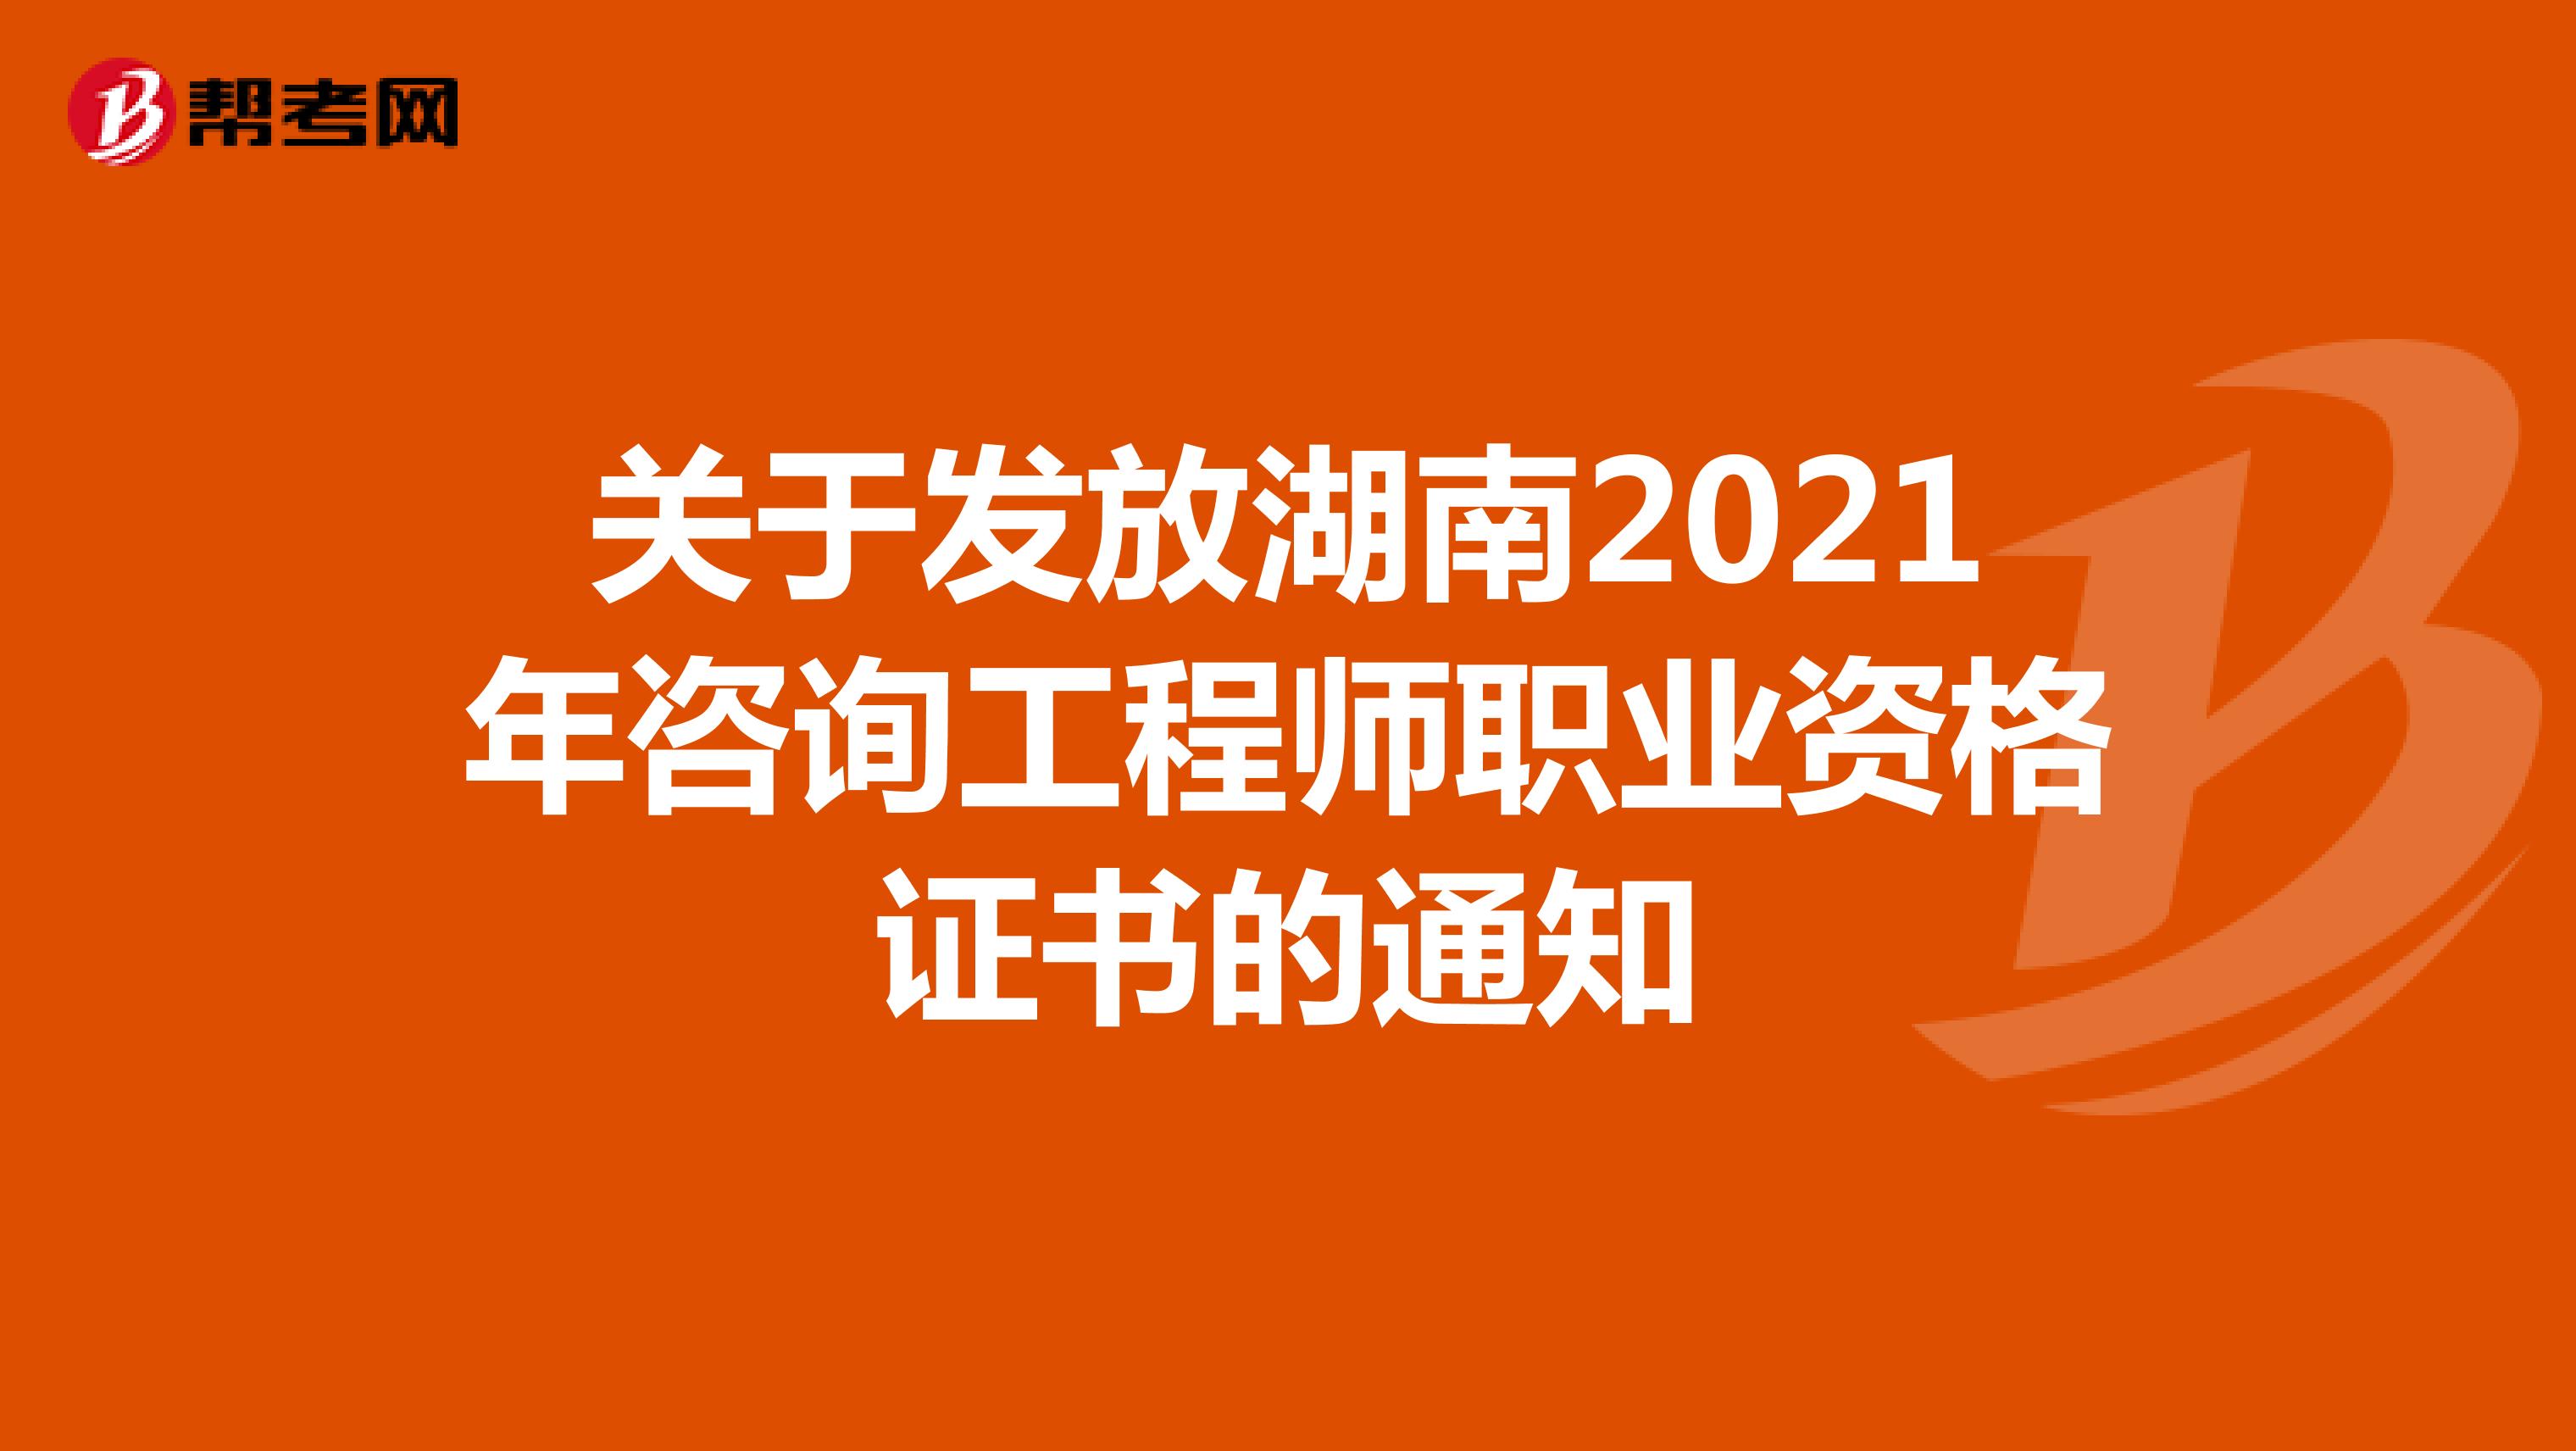 关于发放湖南2021年咨询工程师职业资格证书的通知